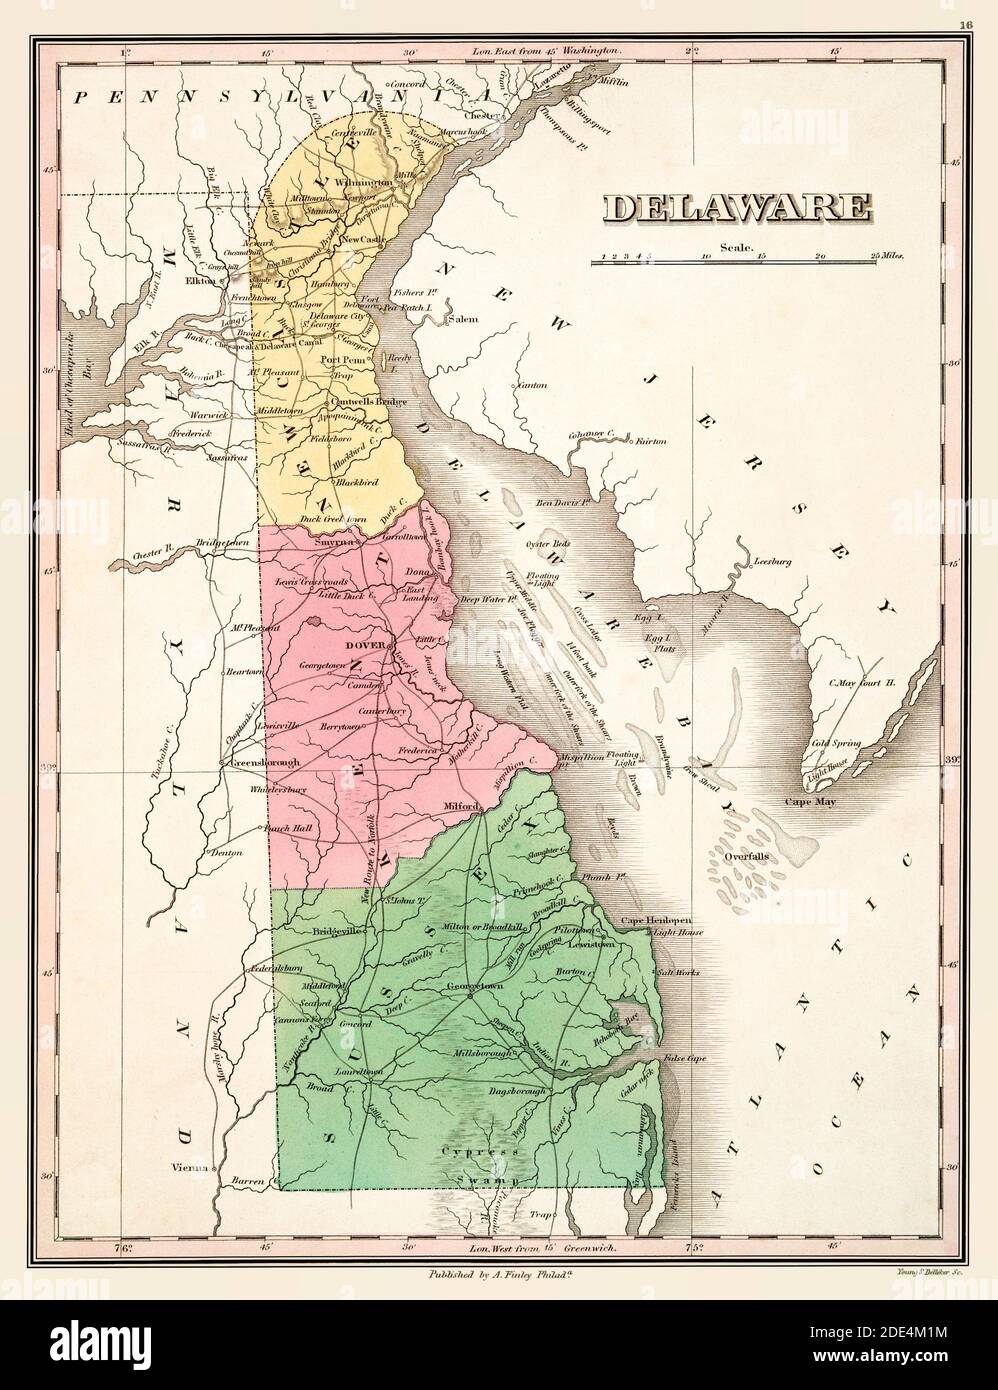 Mappa Delaware circa 1824. Si tratta di una riproduzione migliorata e restaurata di una vecchia mappa del Delaware intorno al 1824. Mostra le sue tre contee a colori. Mostra le città e le caratteristiche geografiche. Foto Stock